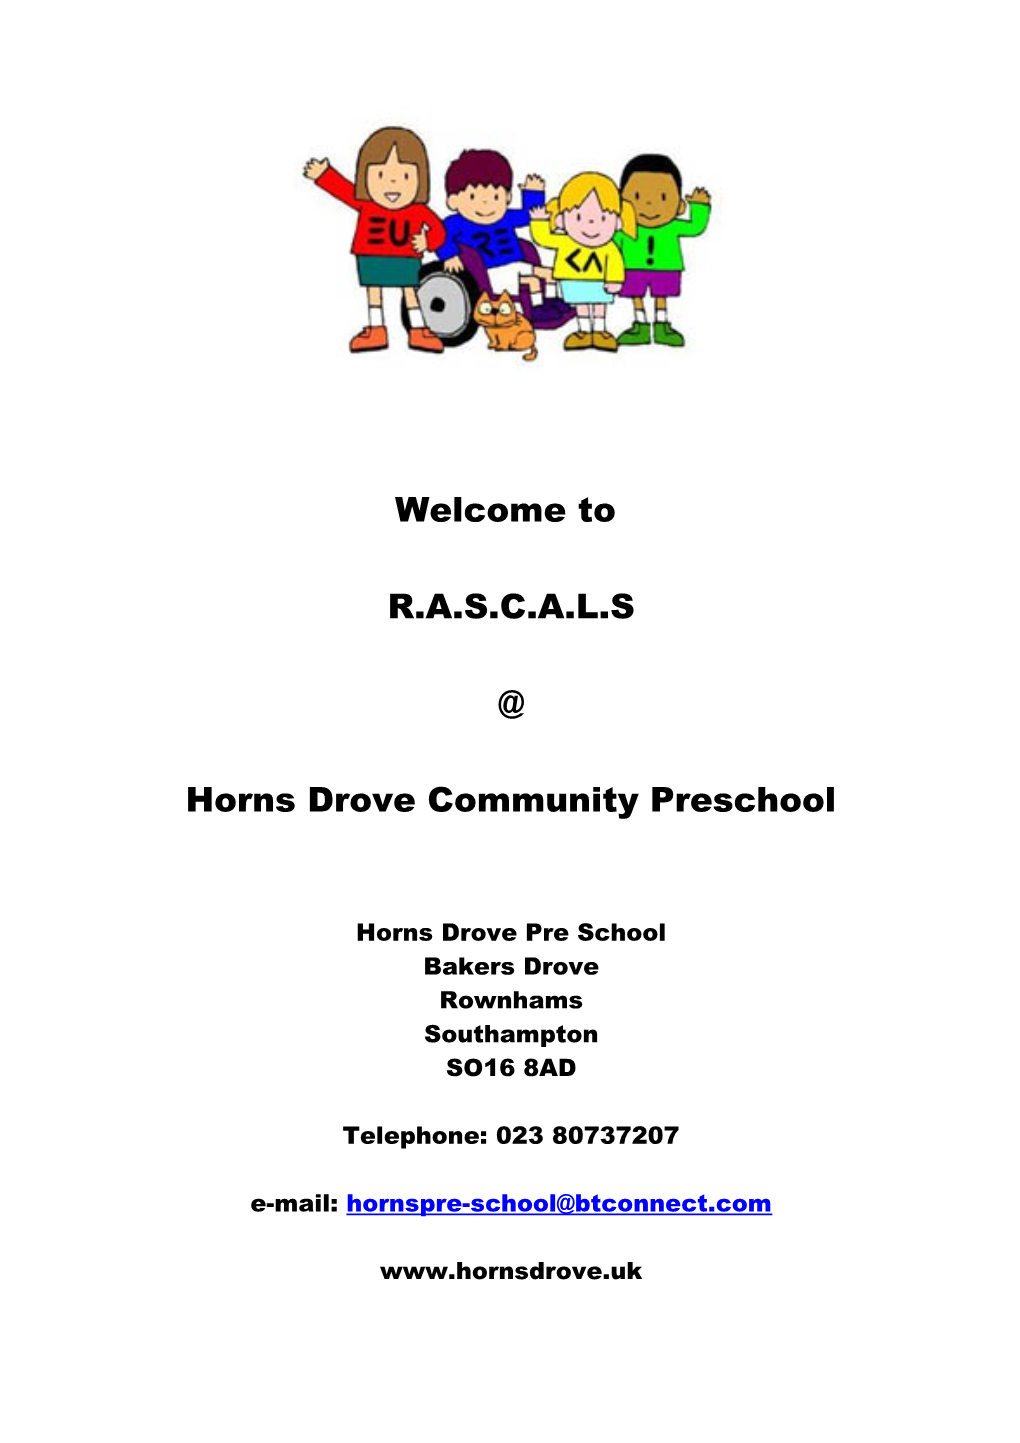 Horns Drove Community Preschool